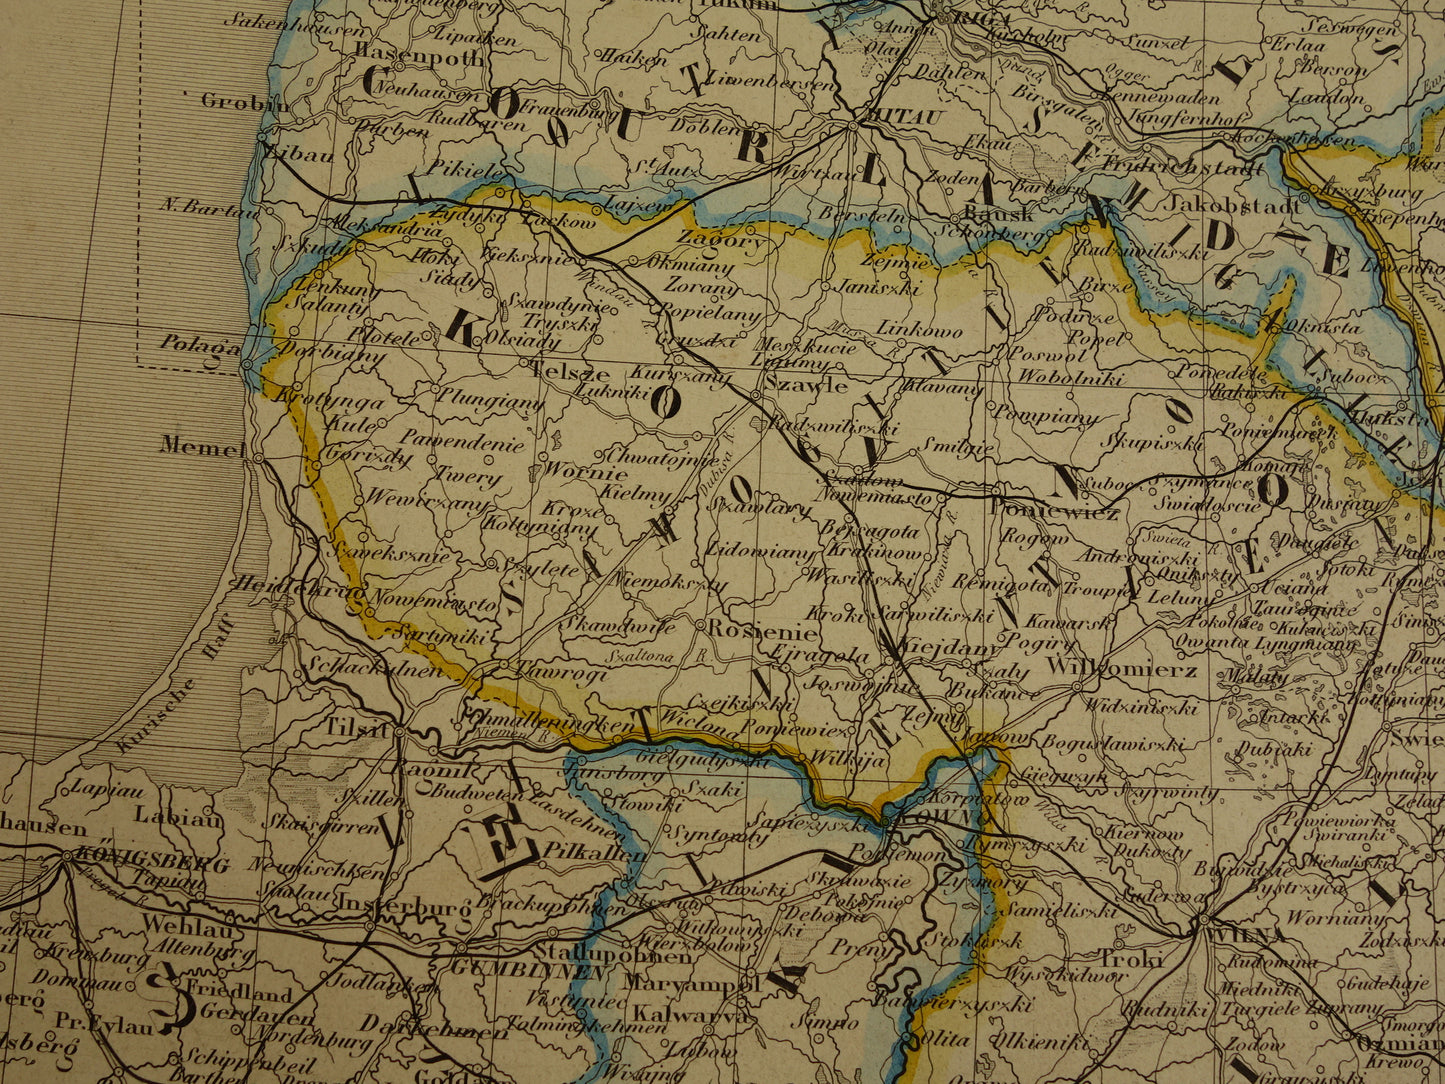 Baltische Staten oude kaart van Europees Rusland 1885 originele antieke landkaart poster Russische Rijk zeer groot formaat